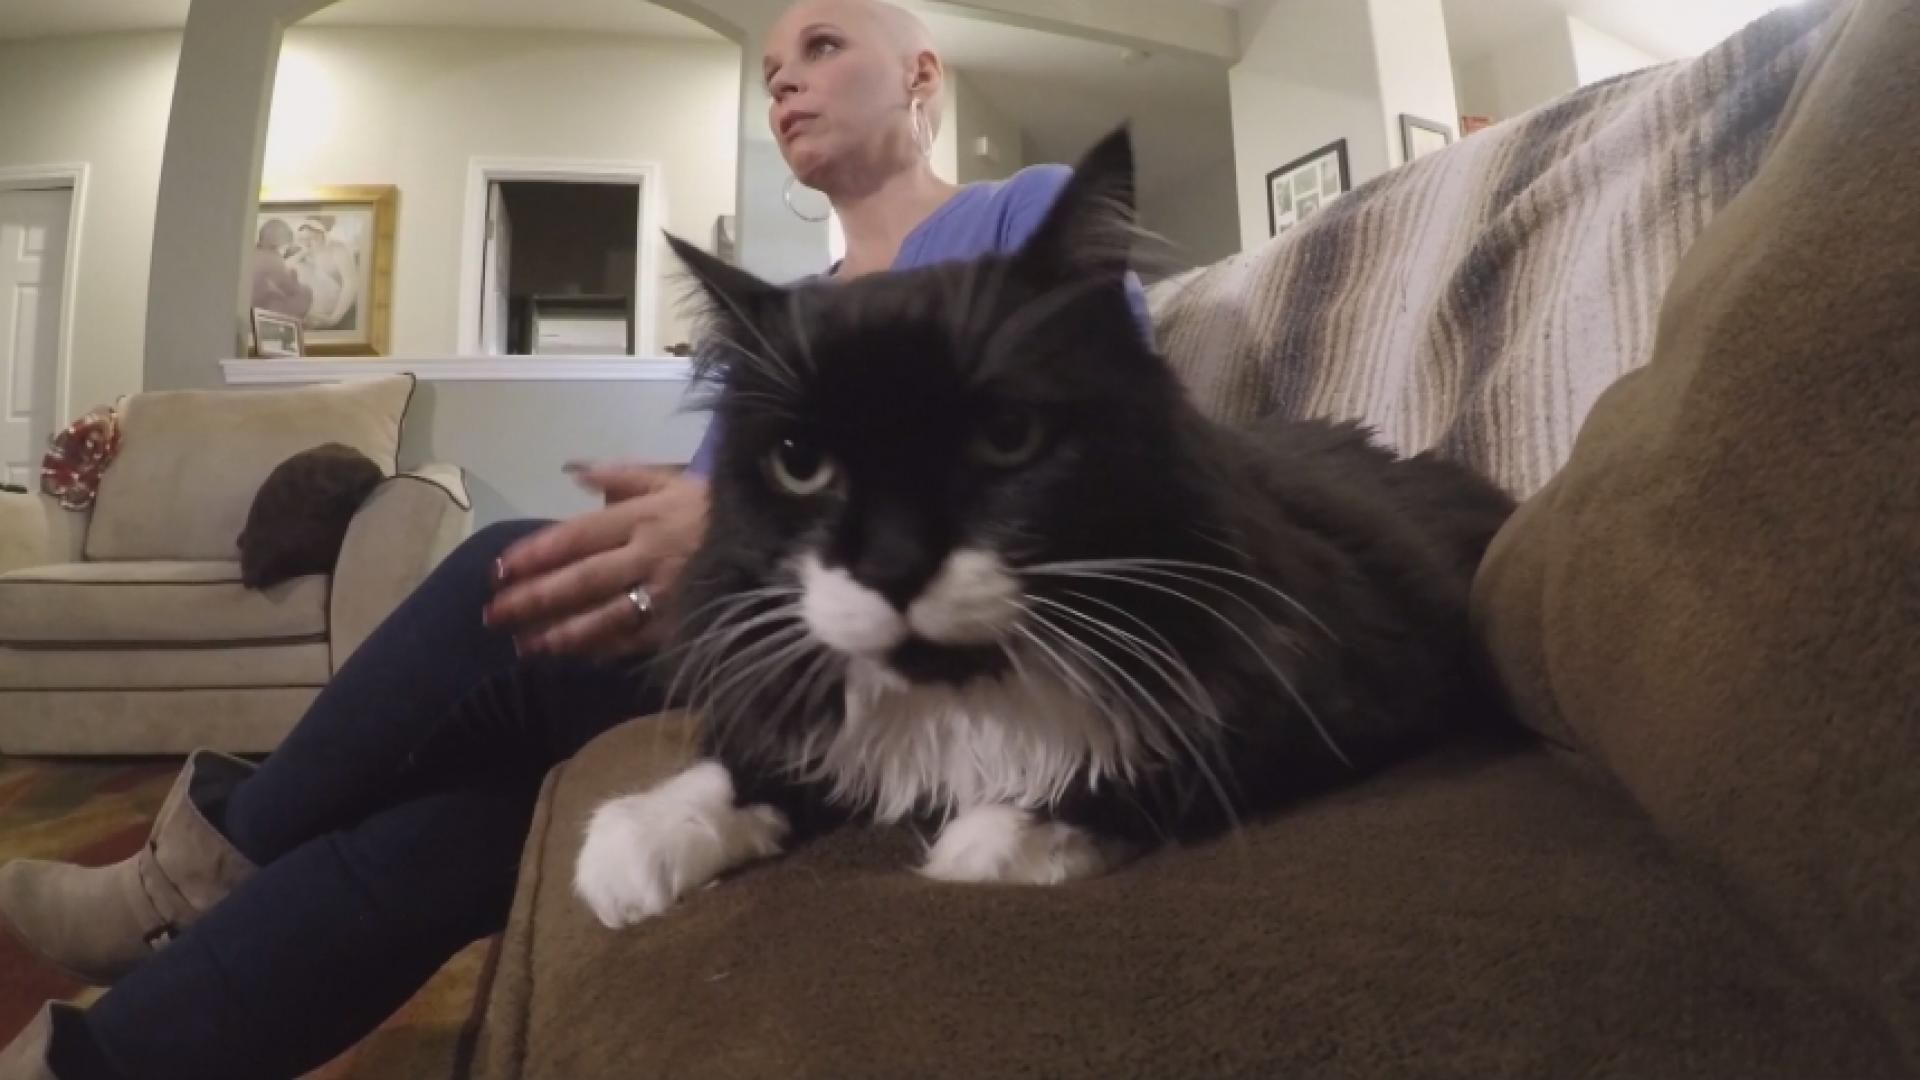 États-Unis : Son chat détecte son cancer du sein et lui sauve la vie